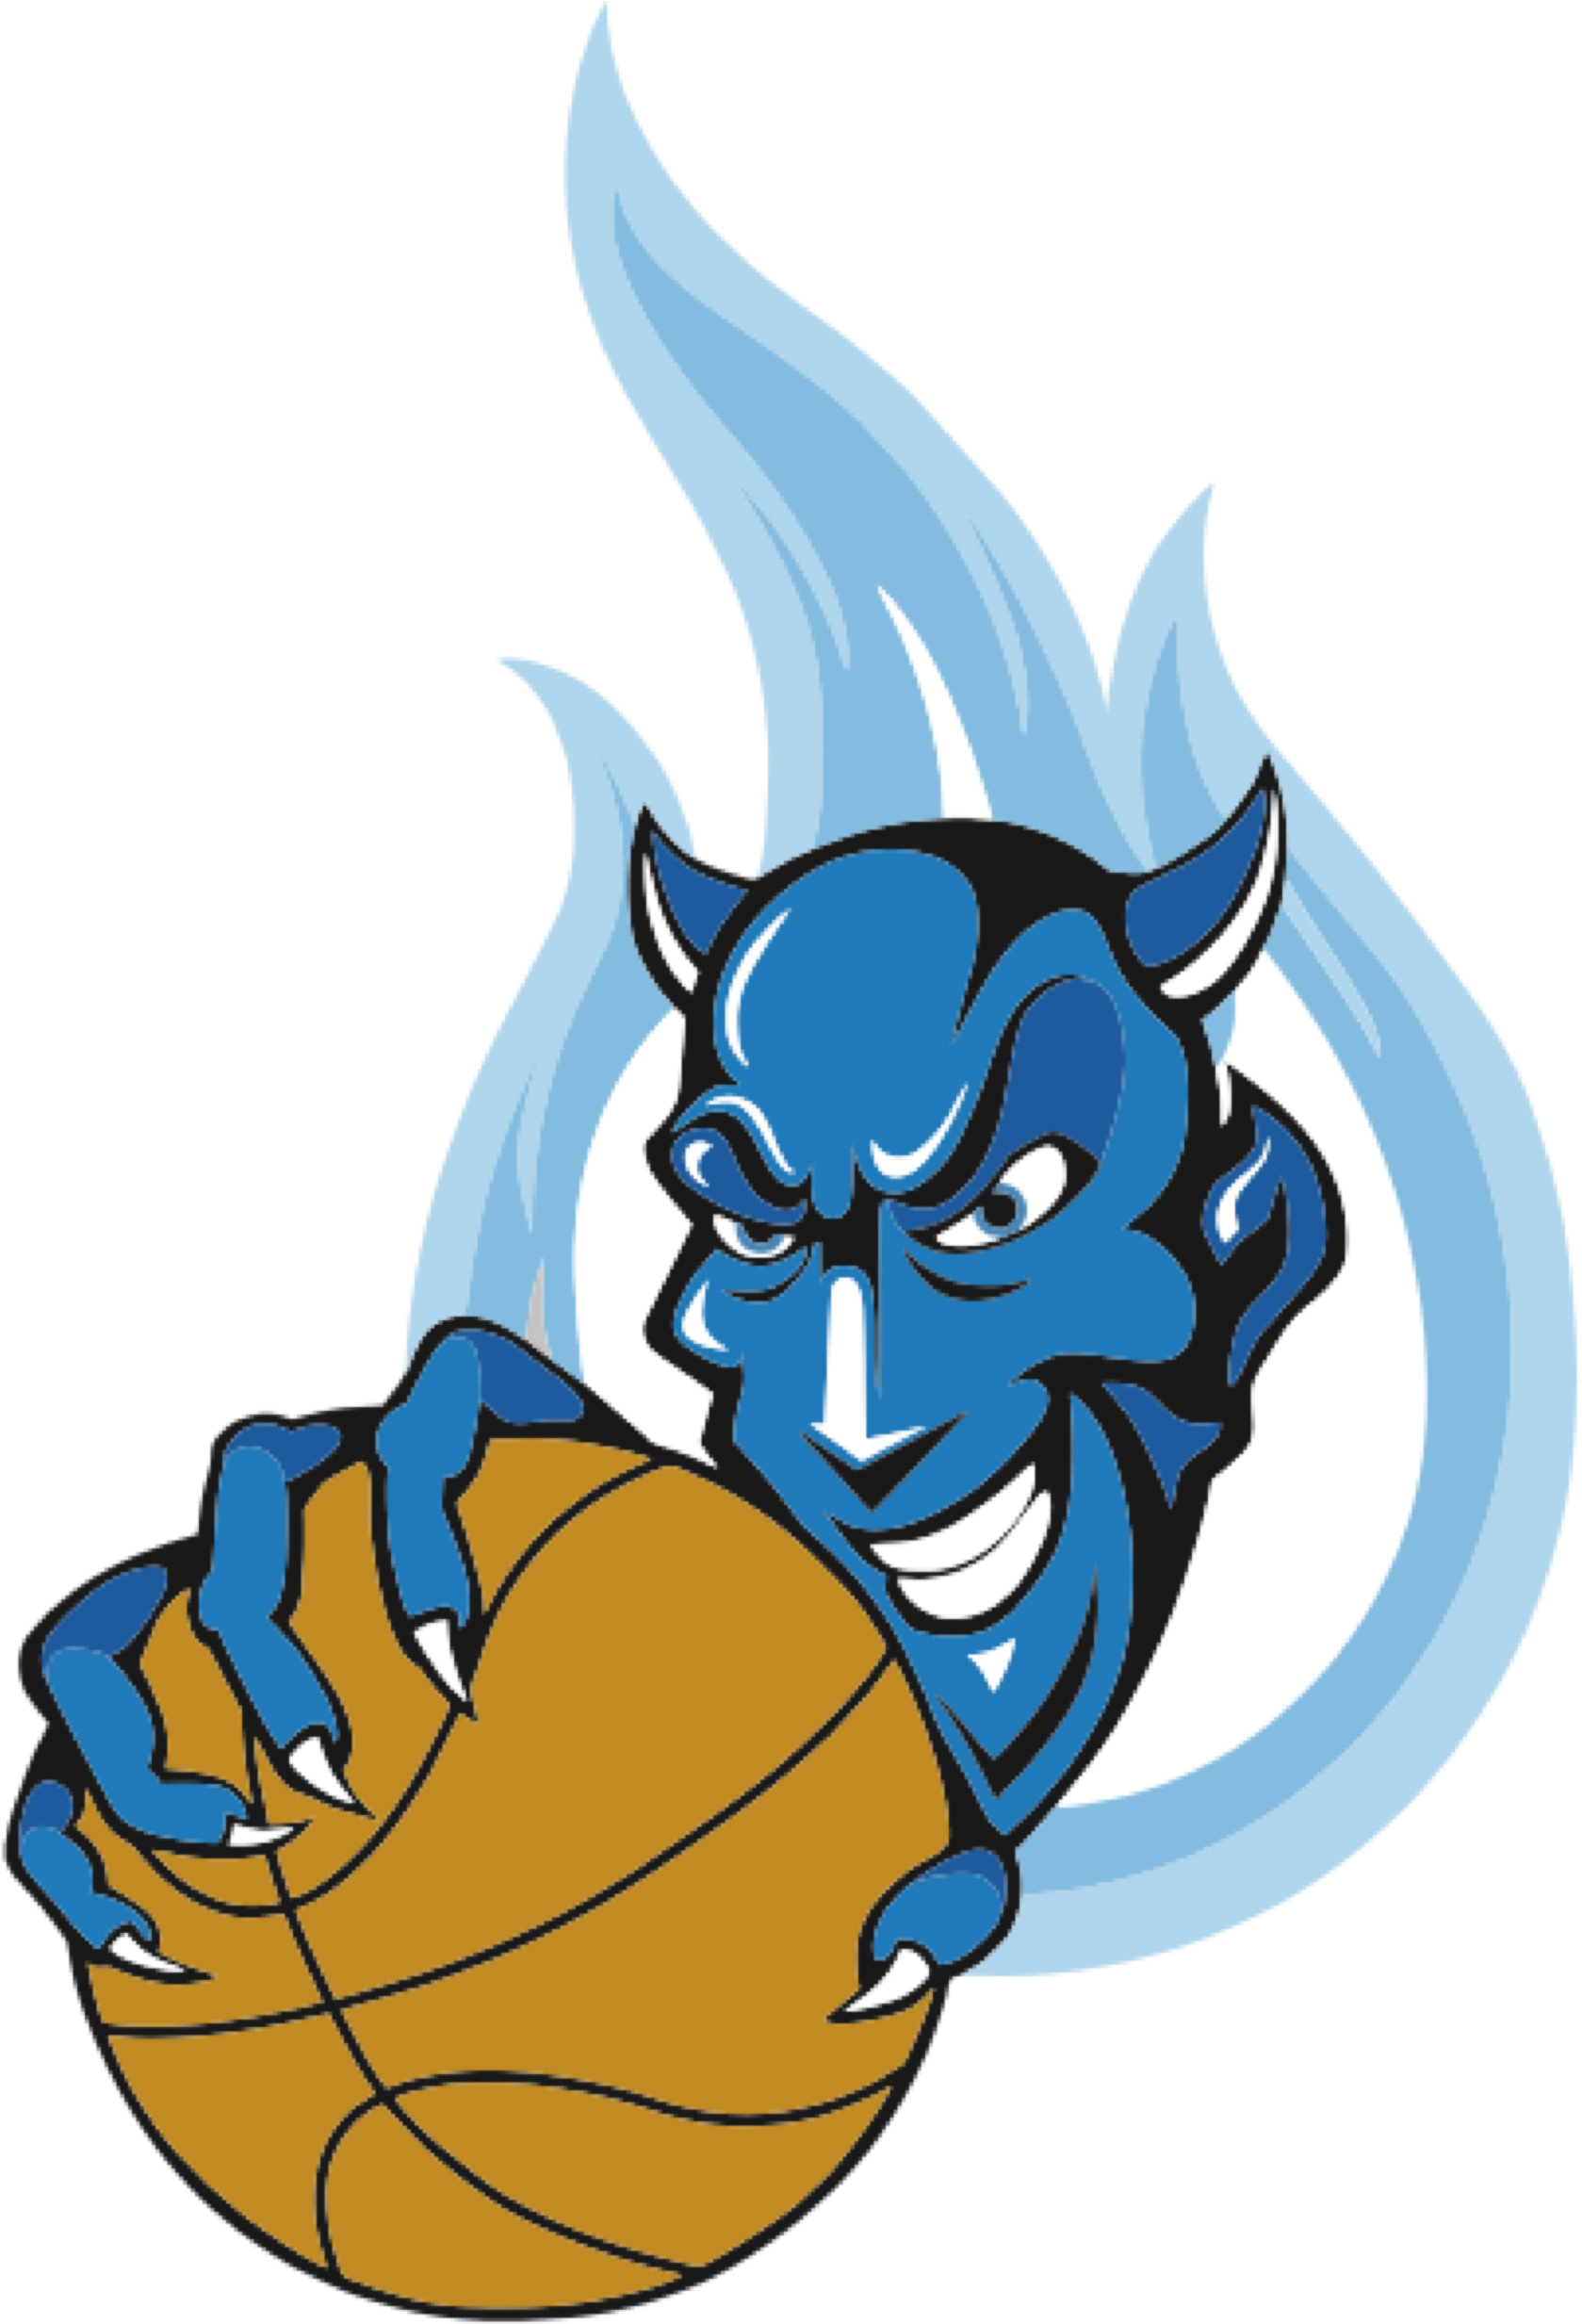 Temporary Tattoos Now In Stock - Duke Blue Devils Men's Basketball (5000x3209)